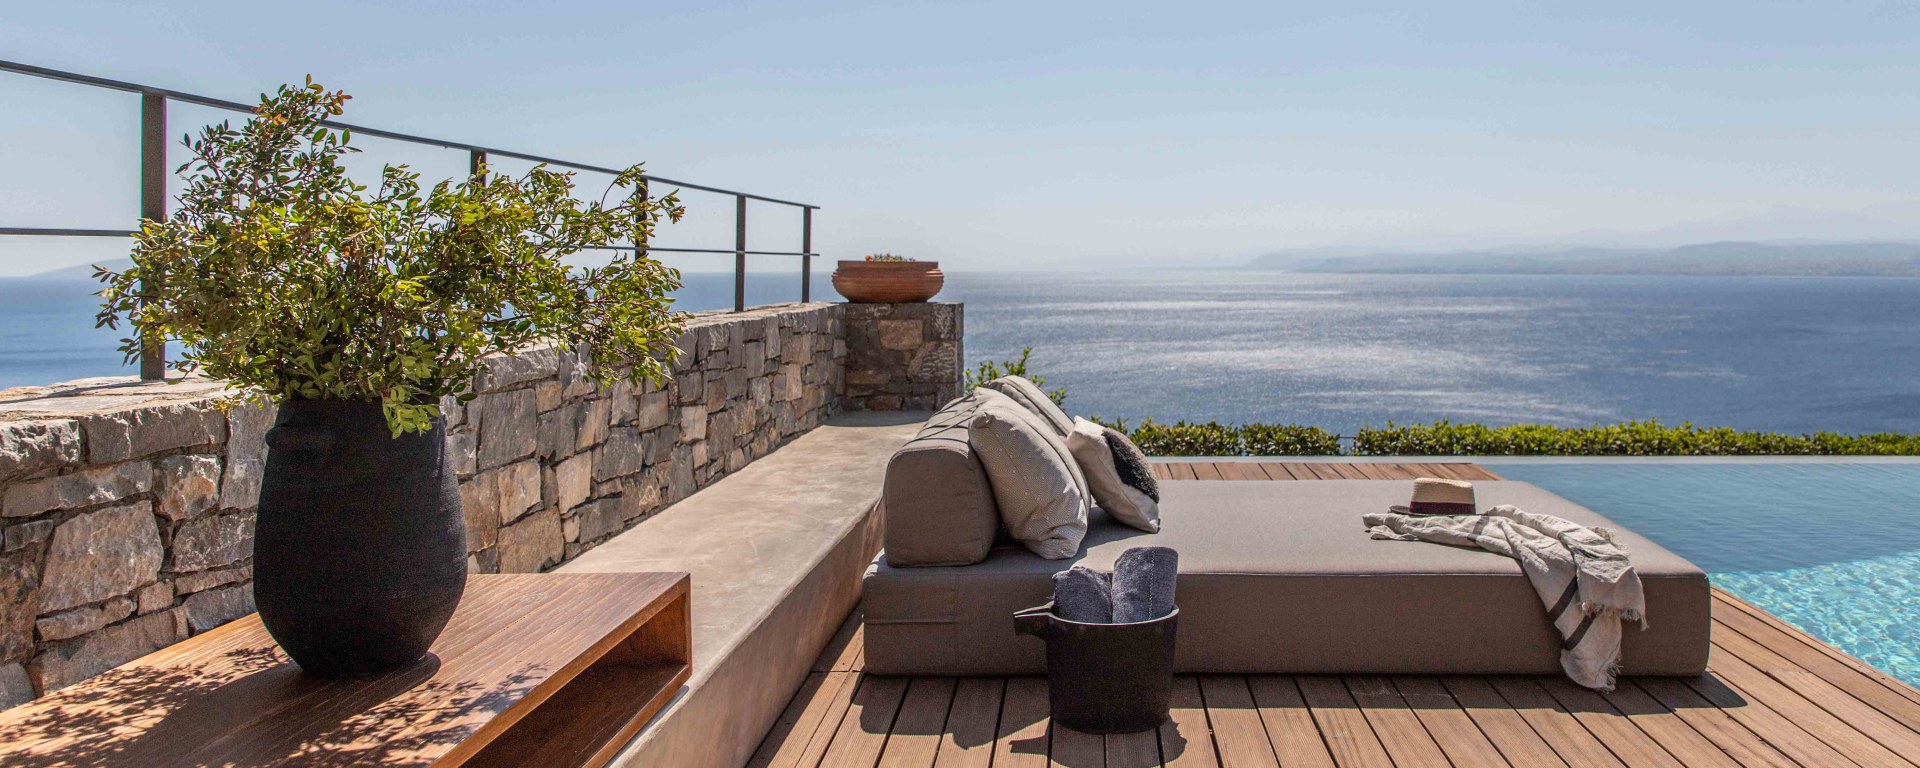 Luxus Ferienhaus Auf Kreta Mieten 14